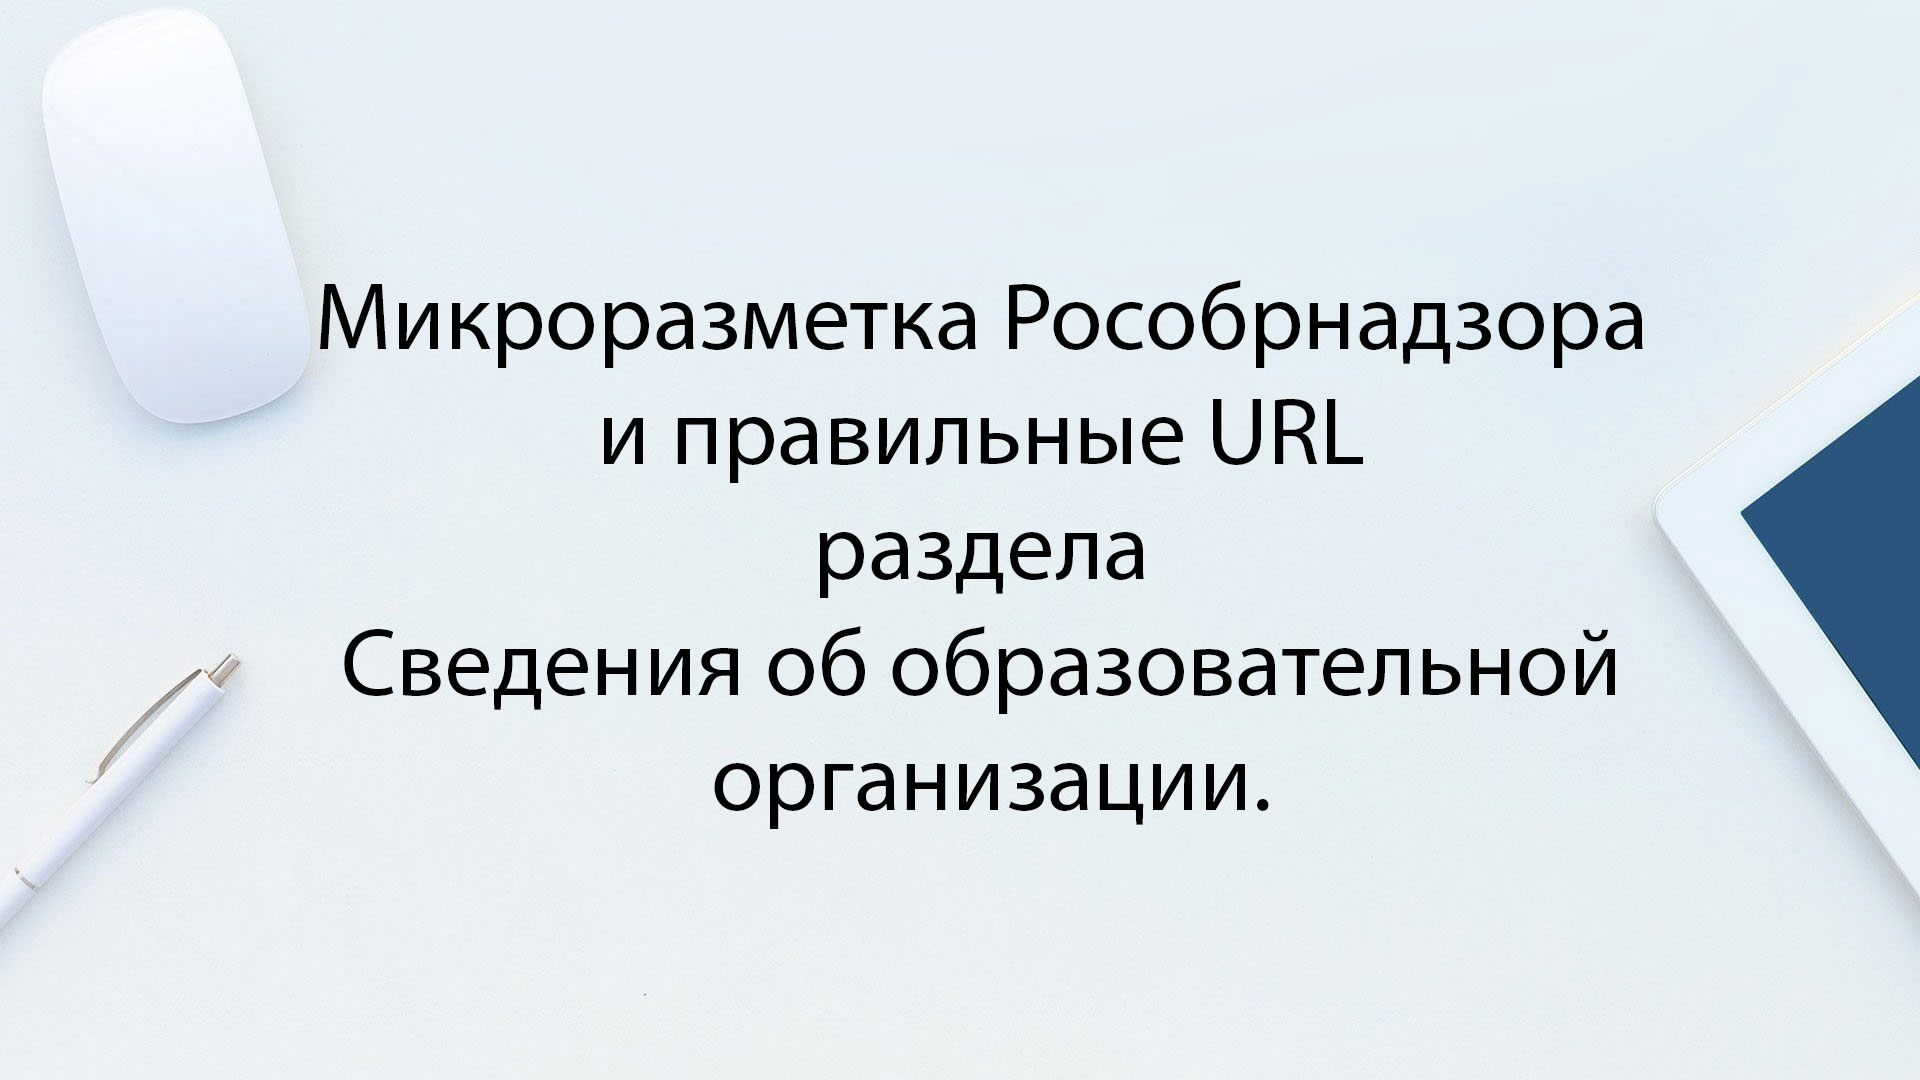 Микроразметка Рособрнадзора и правильные URL раздела Сведения об образовательной организации.